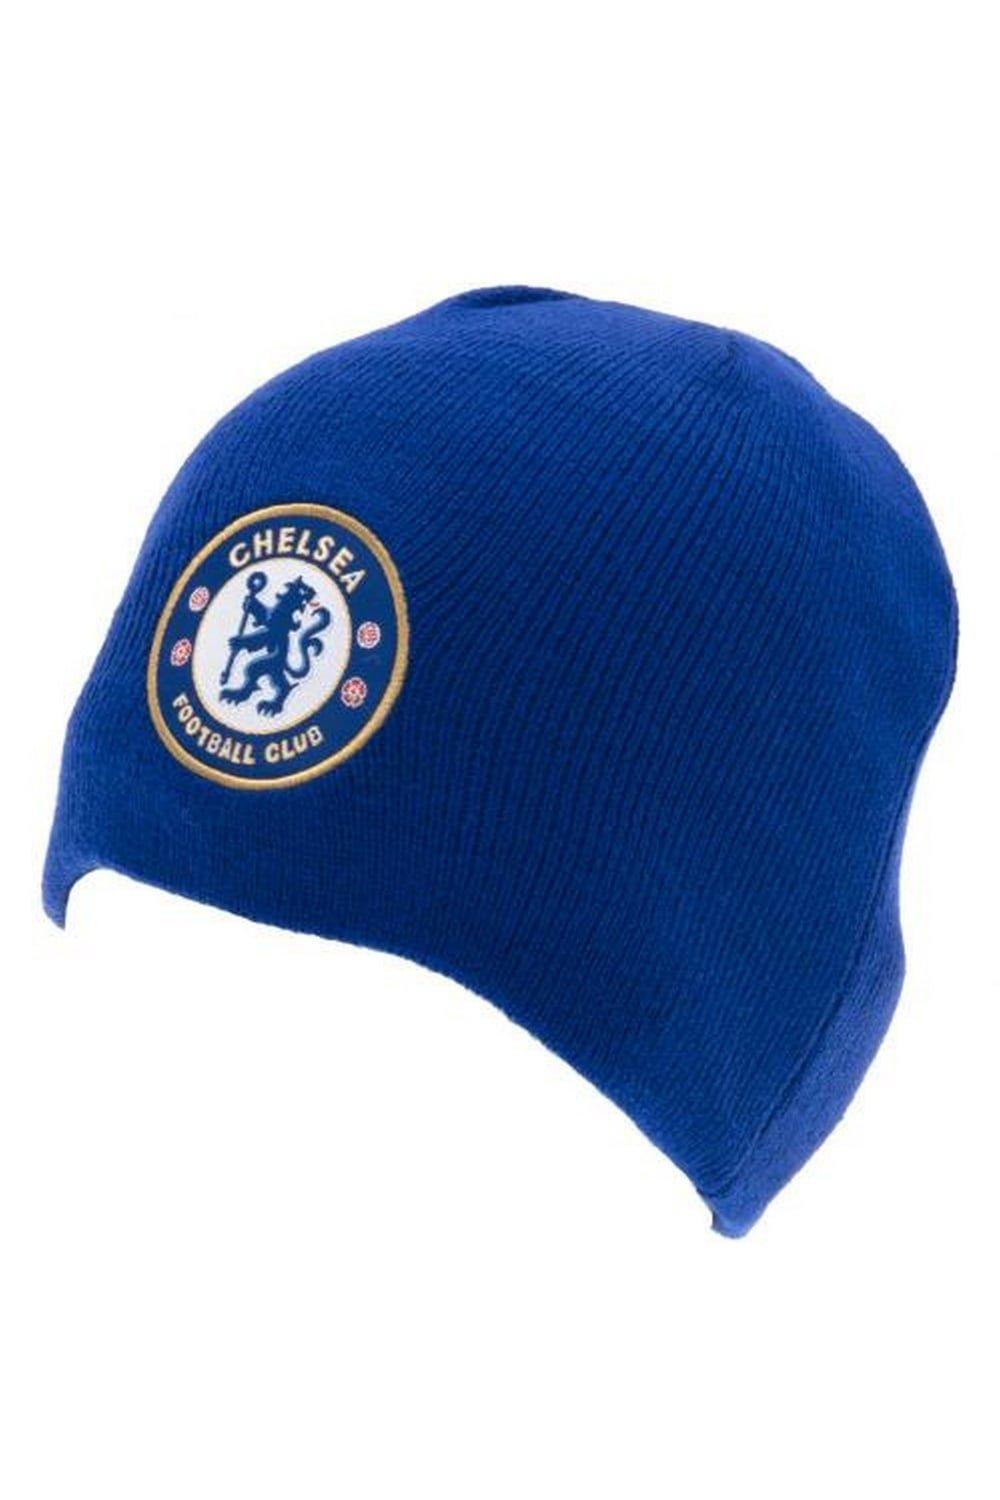 Официальная вязаная шапка Chelsea FC, синий шапка гриффиндор с гербом универсальный детский размер